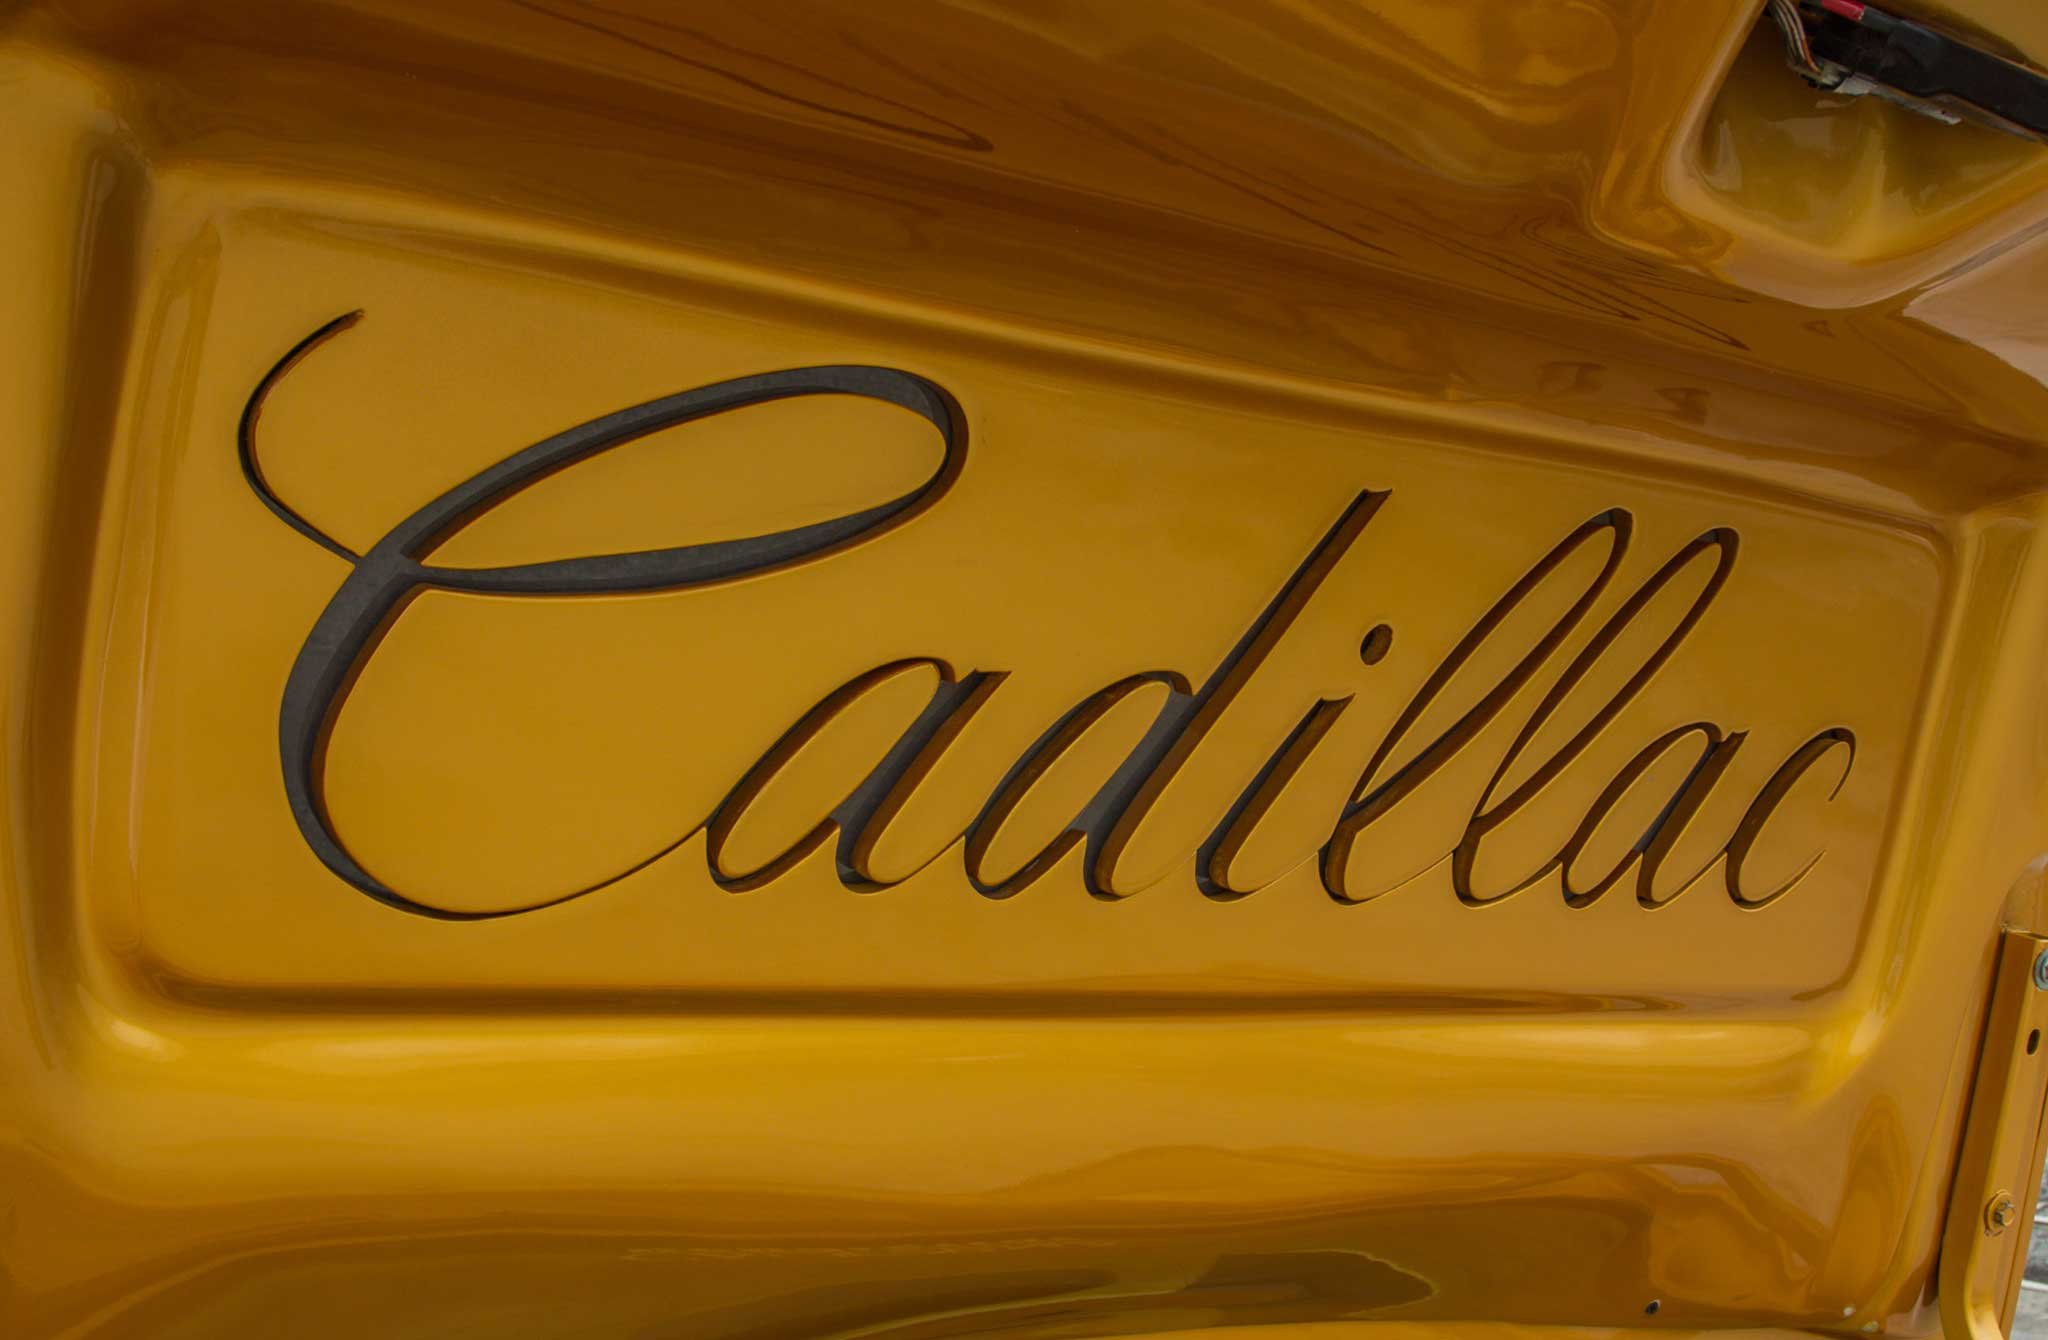 2001, Cadillac, Deville, Custom, Tuning, Hot, Rods, Rod, Gangsta, Lowrider Wallpaper